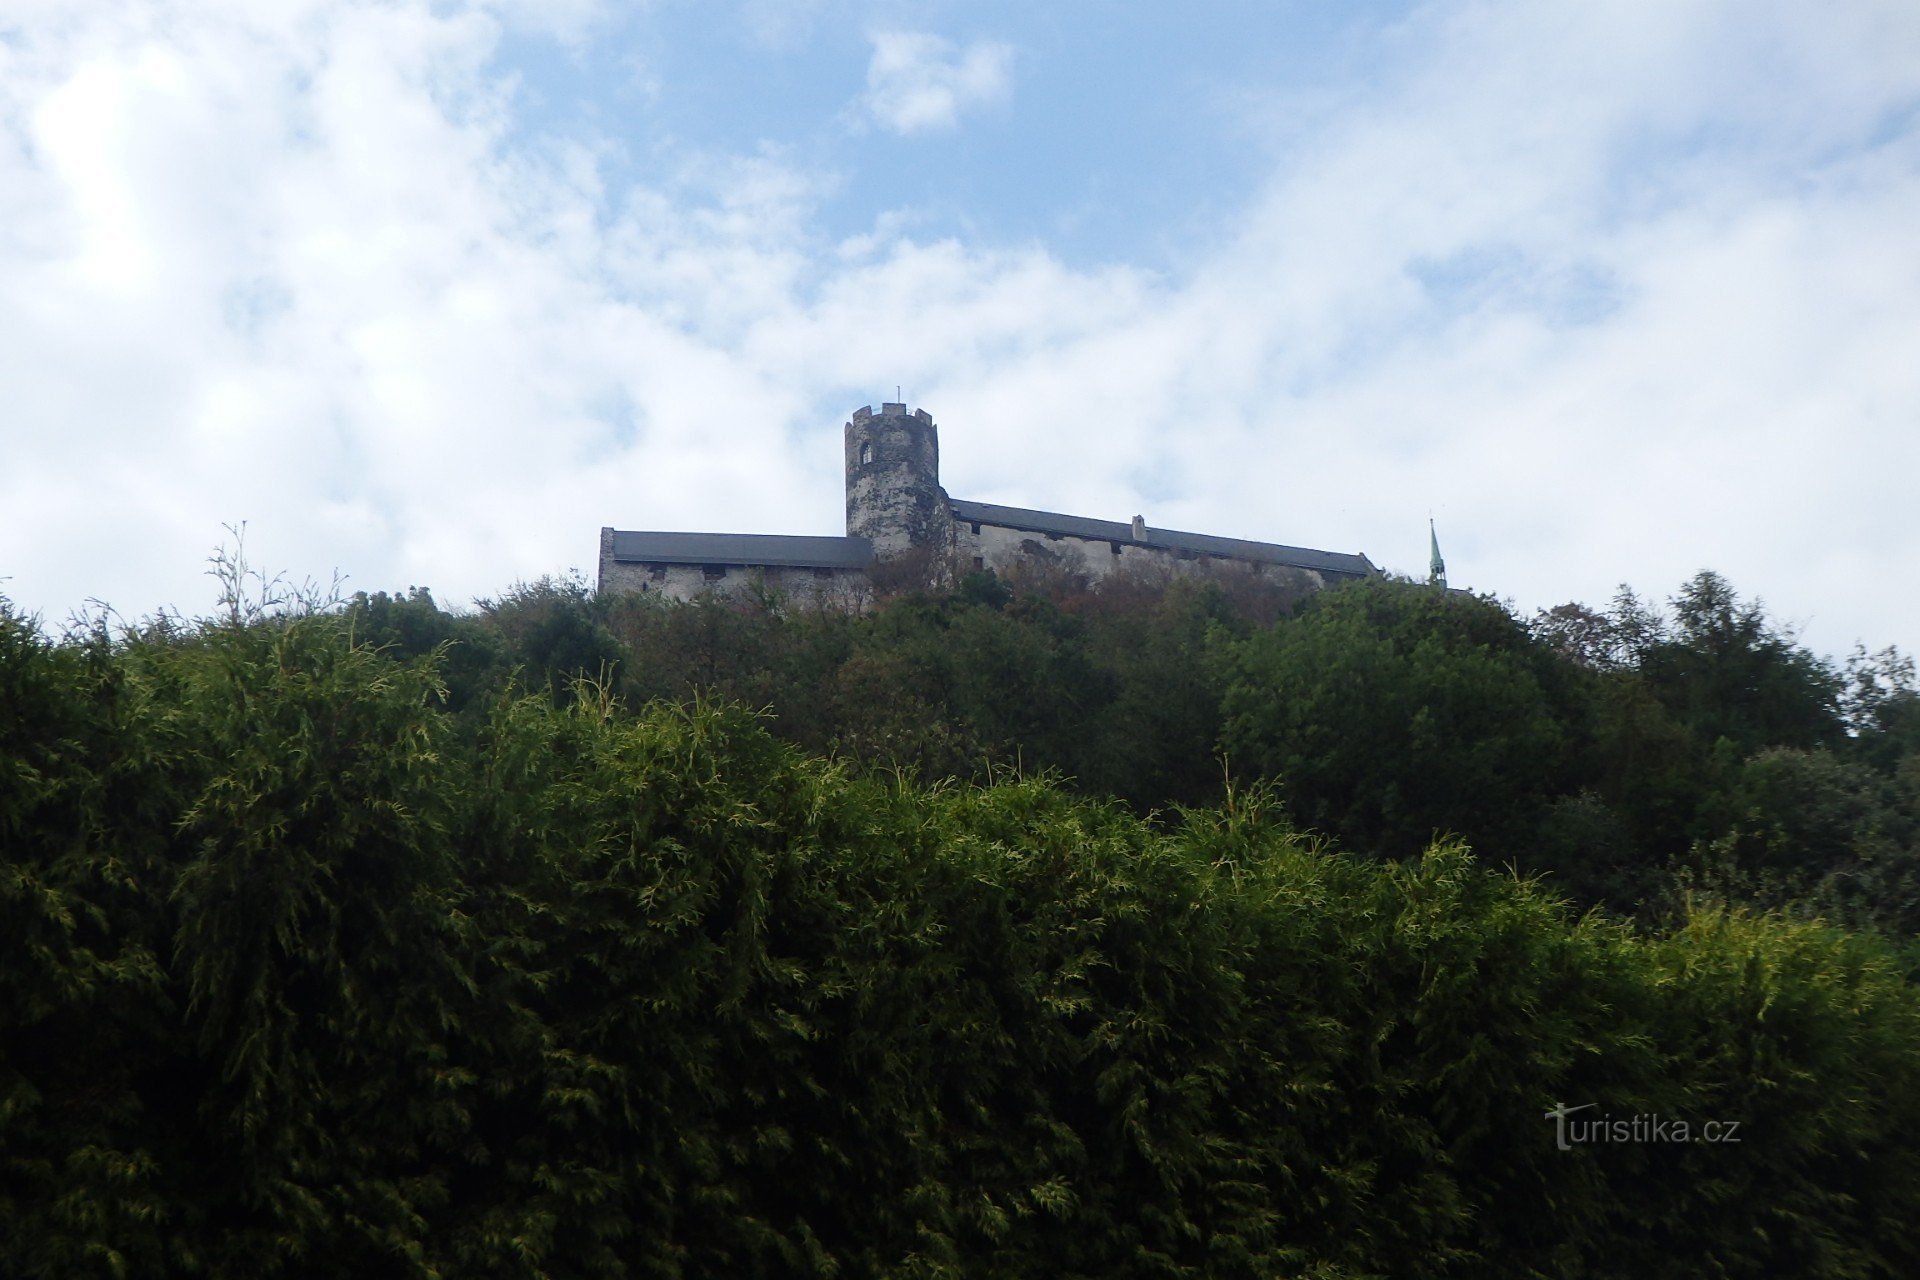 Château Bezděz